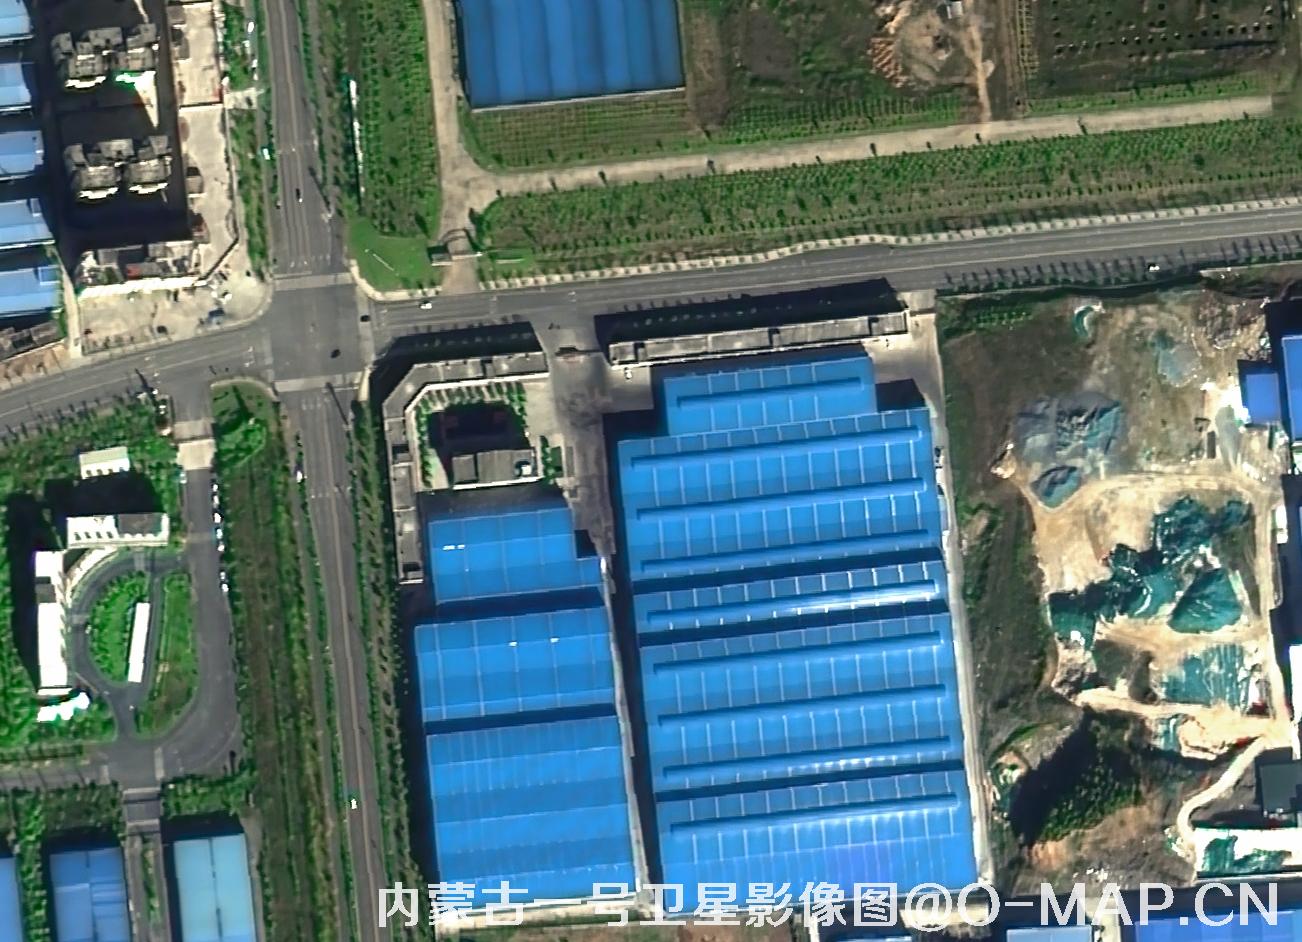 内蒙古一号卫星拍摄的0.5米大型厂房影像图